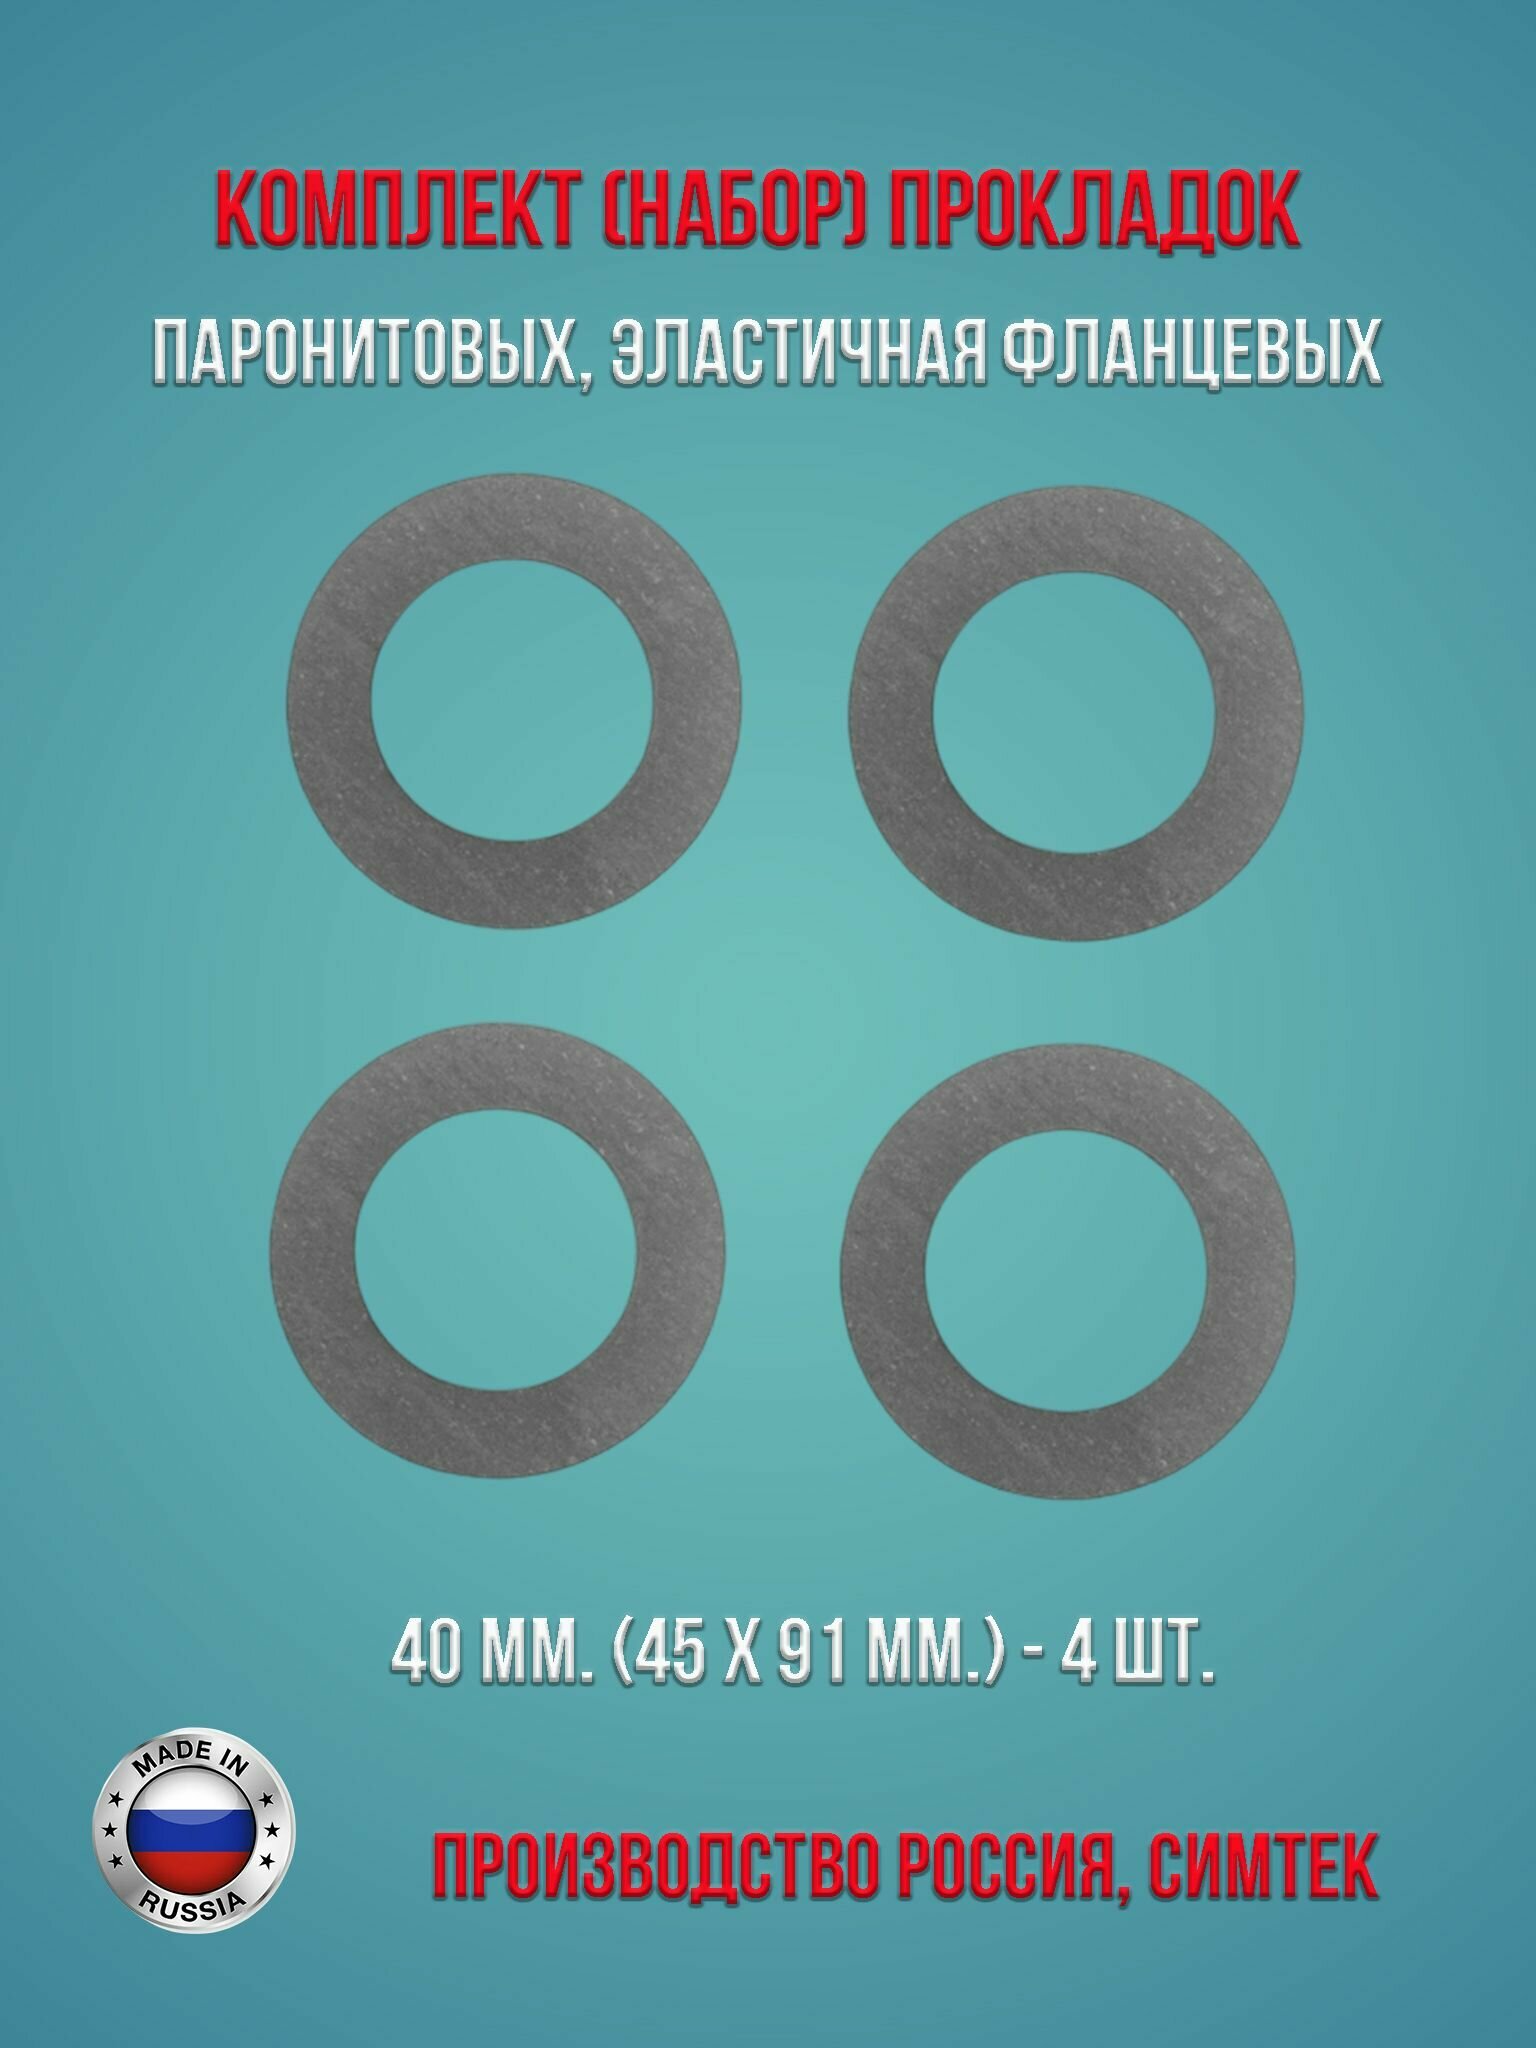 Комплект (набор) паронитовых эластичная фланцевых прокладок в соответствии с ГОСТ 15180-86 диаметр 40 мм. (45 х 91 мм.) 4 штуки